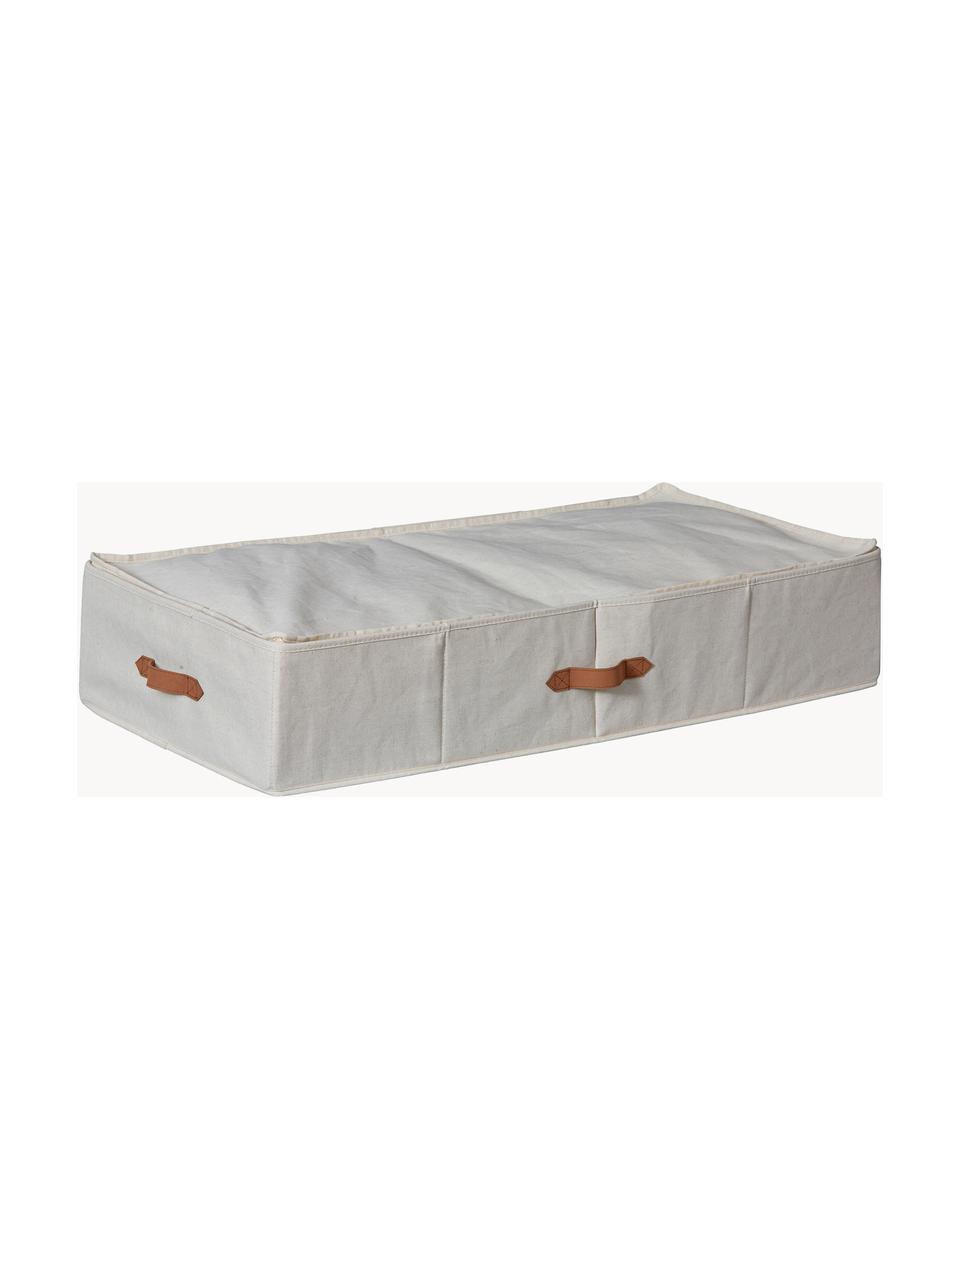 Úložný box pod postel Premium, Světle béžová, hnědá, Š 90 cm, H 45 cm